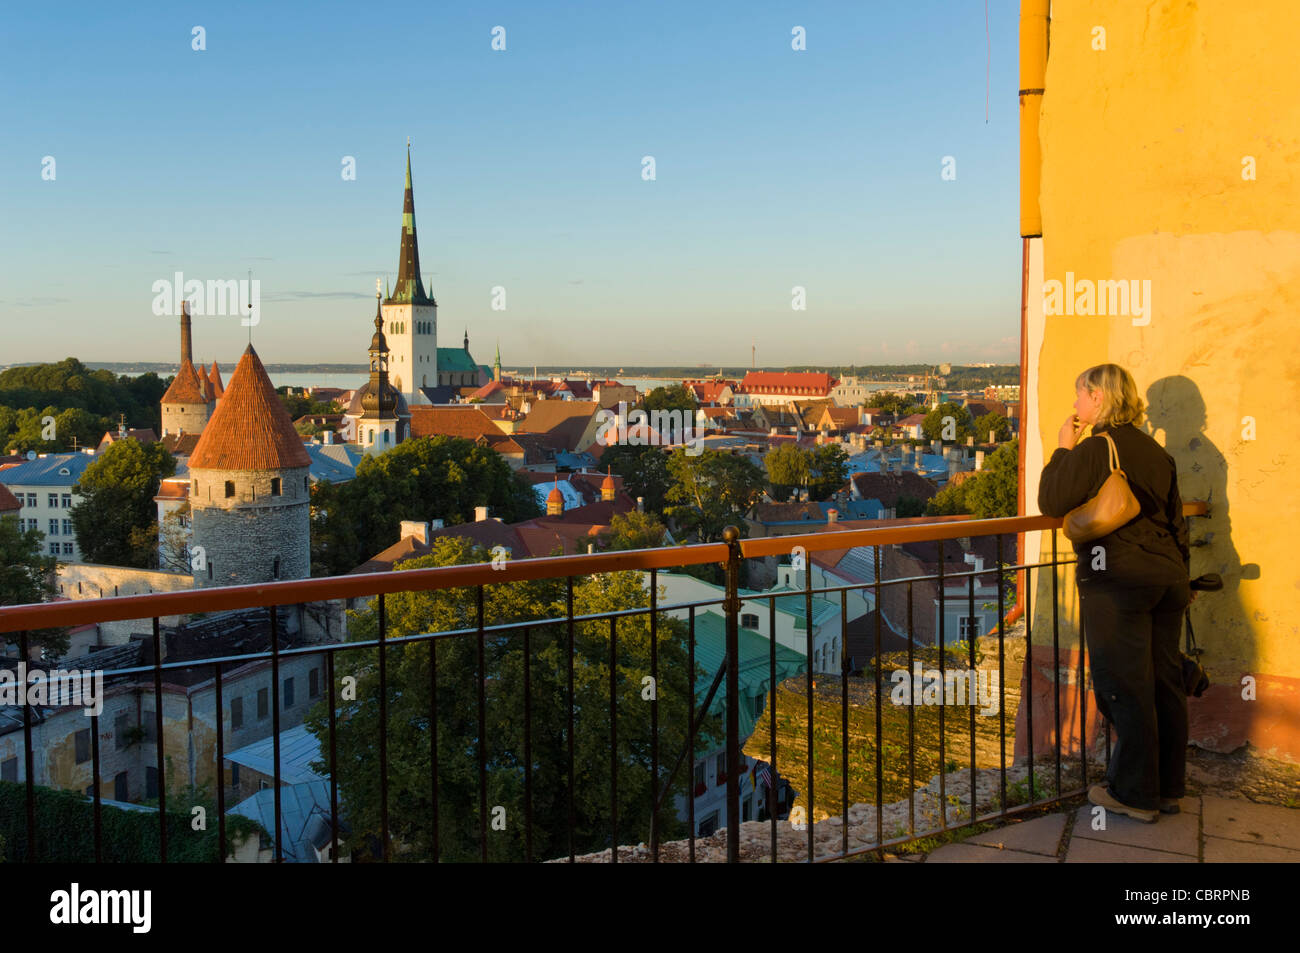 La vieille ville de Tallinn ville médiévale de tours de défense et les murs de l'église St Olafs Baltique Europe UE Estonie Banque D'Images